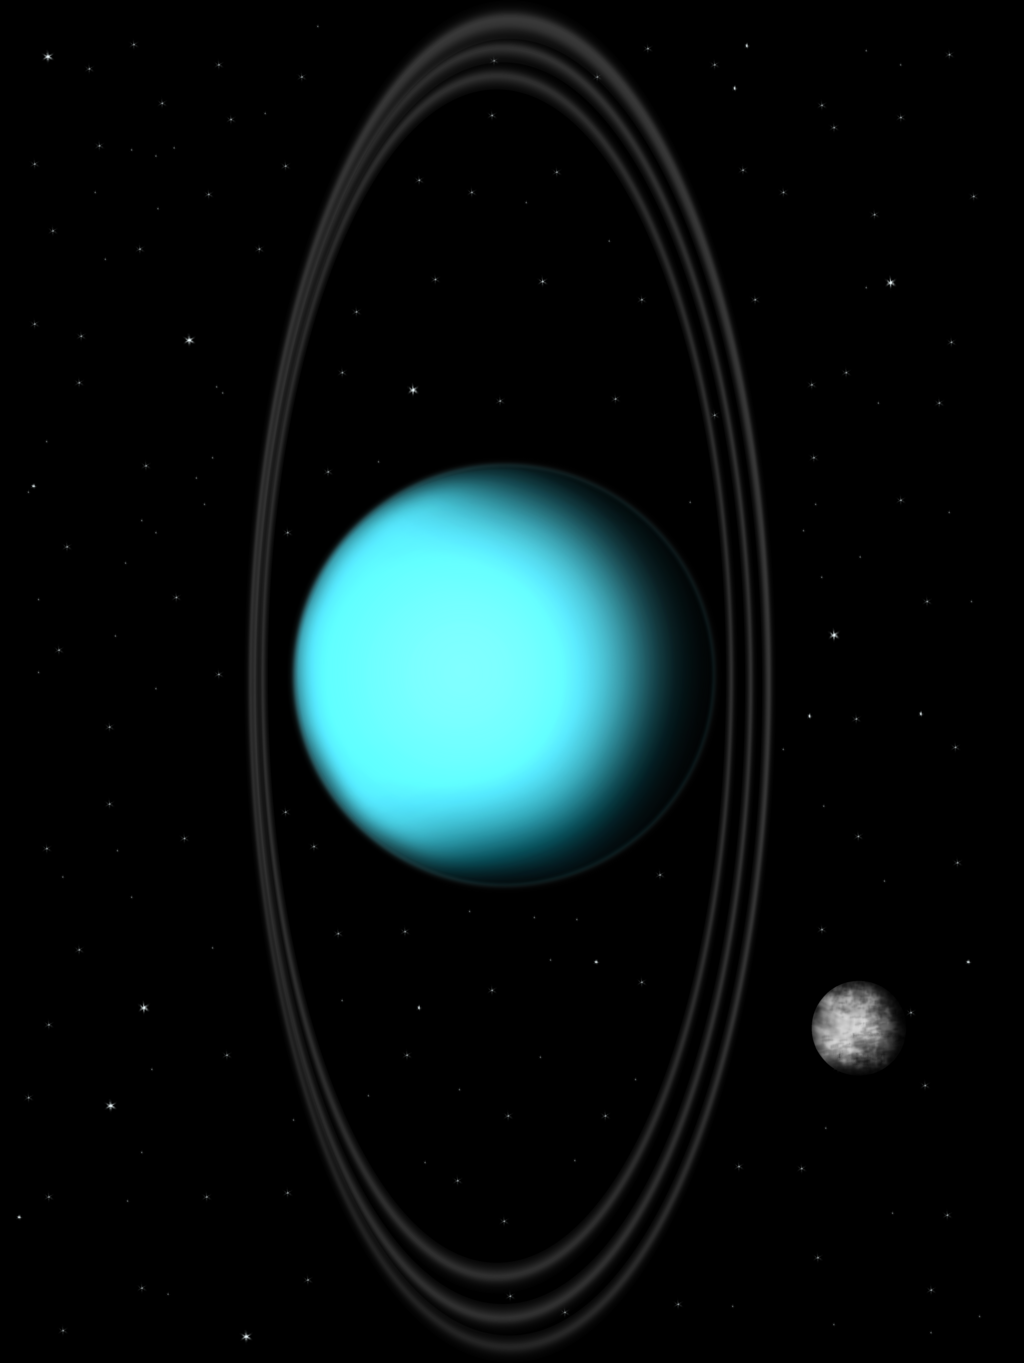 Uranus (Tutorial Video in Description)